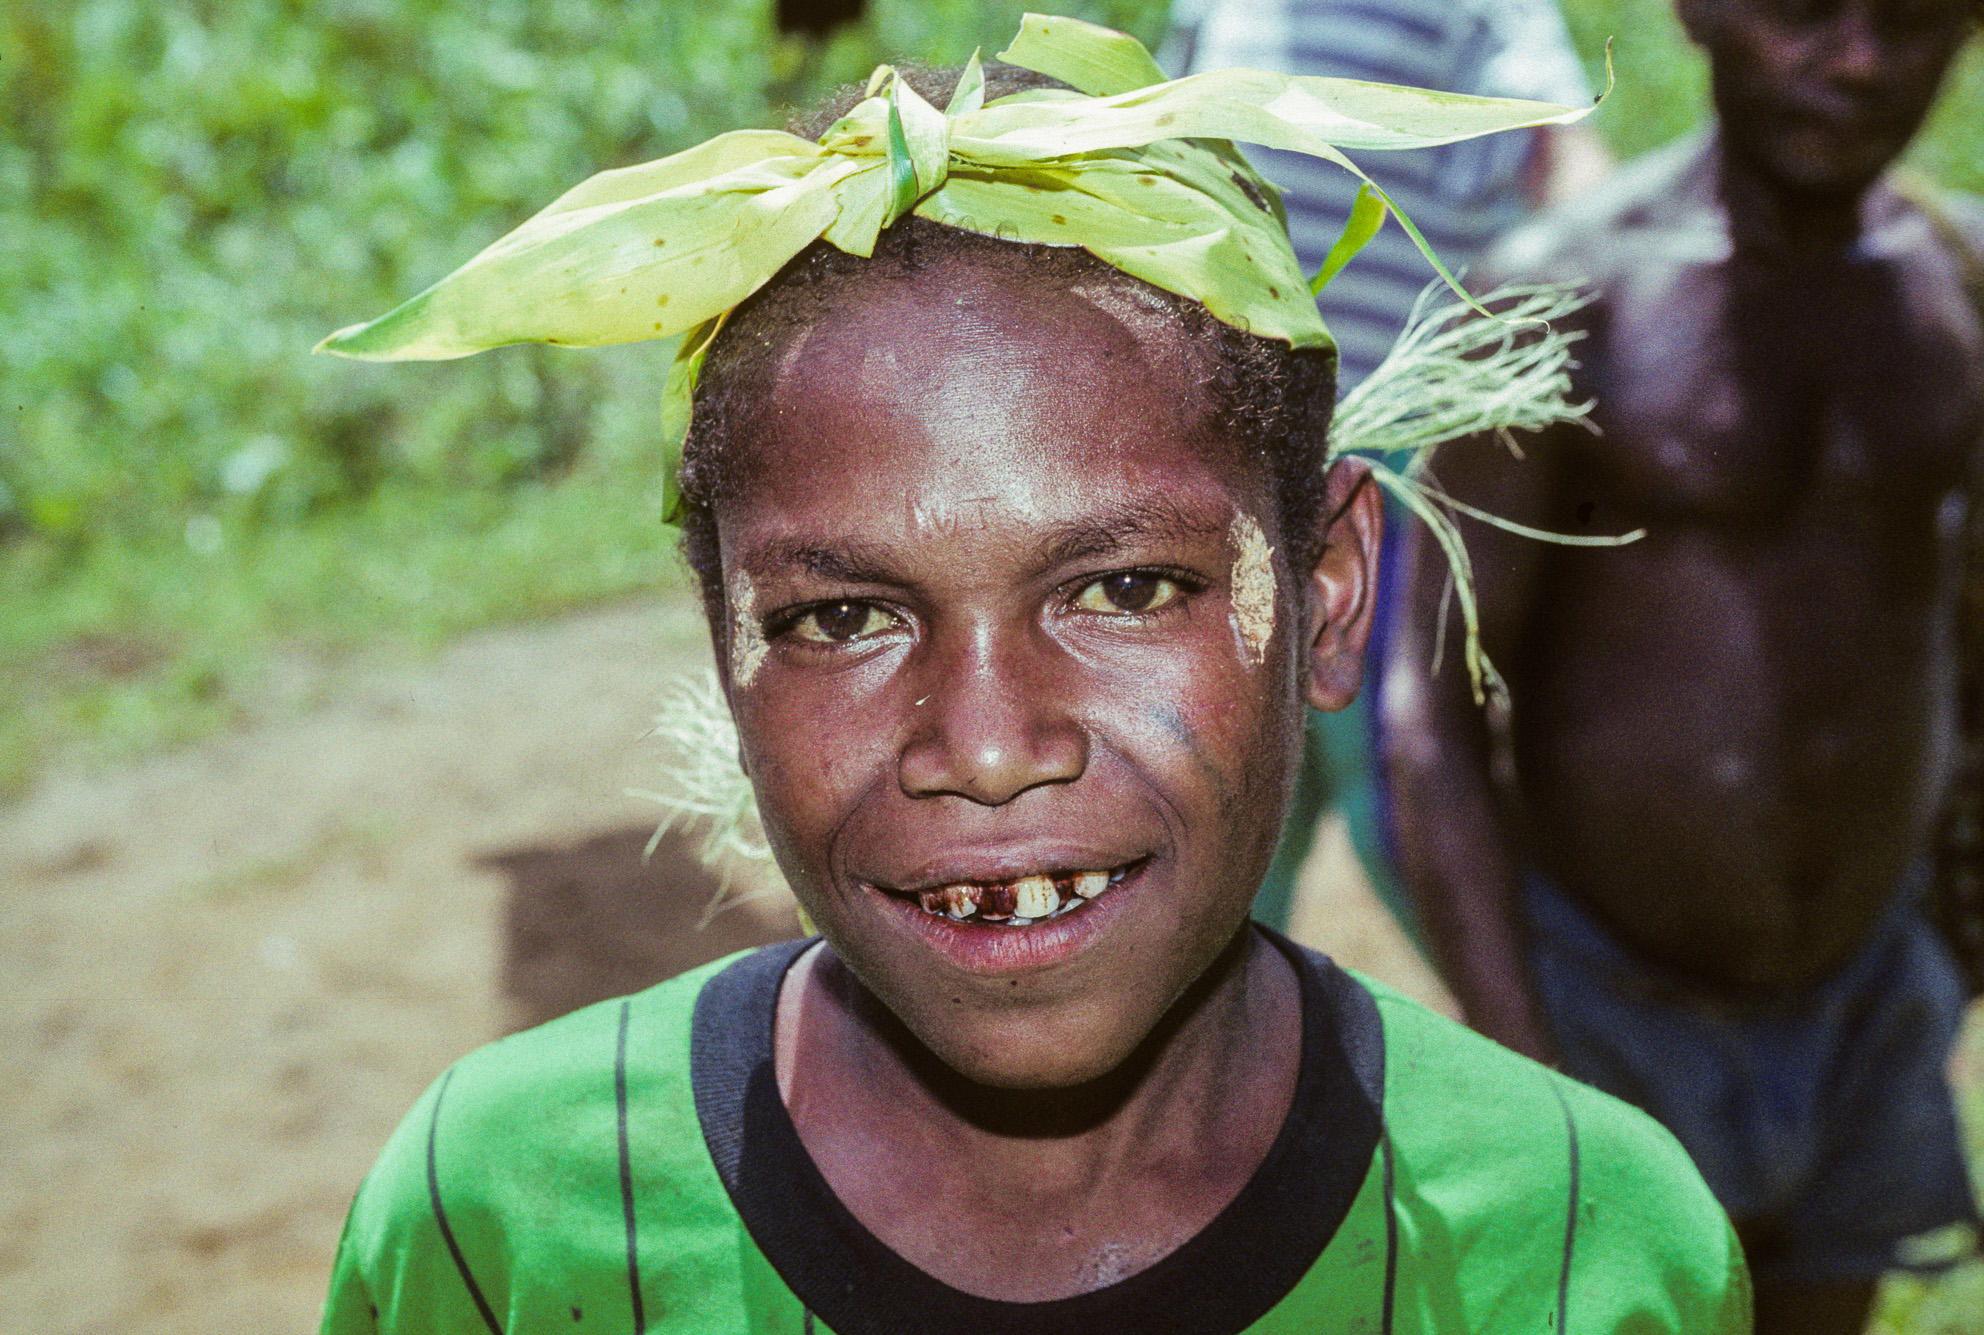 Nouvelle Guinée Papouasie. Rabaul, tribu des Tolaï. Cet enfant a les lèvres en sang car il mache du bétel additionné de chaux vive.